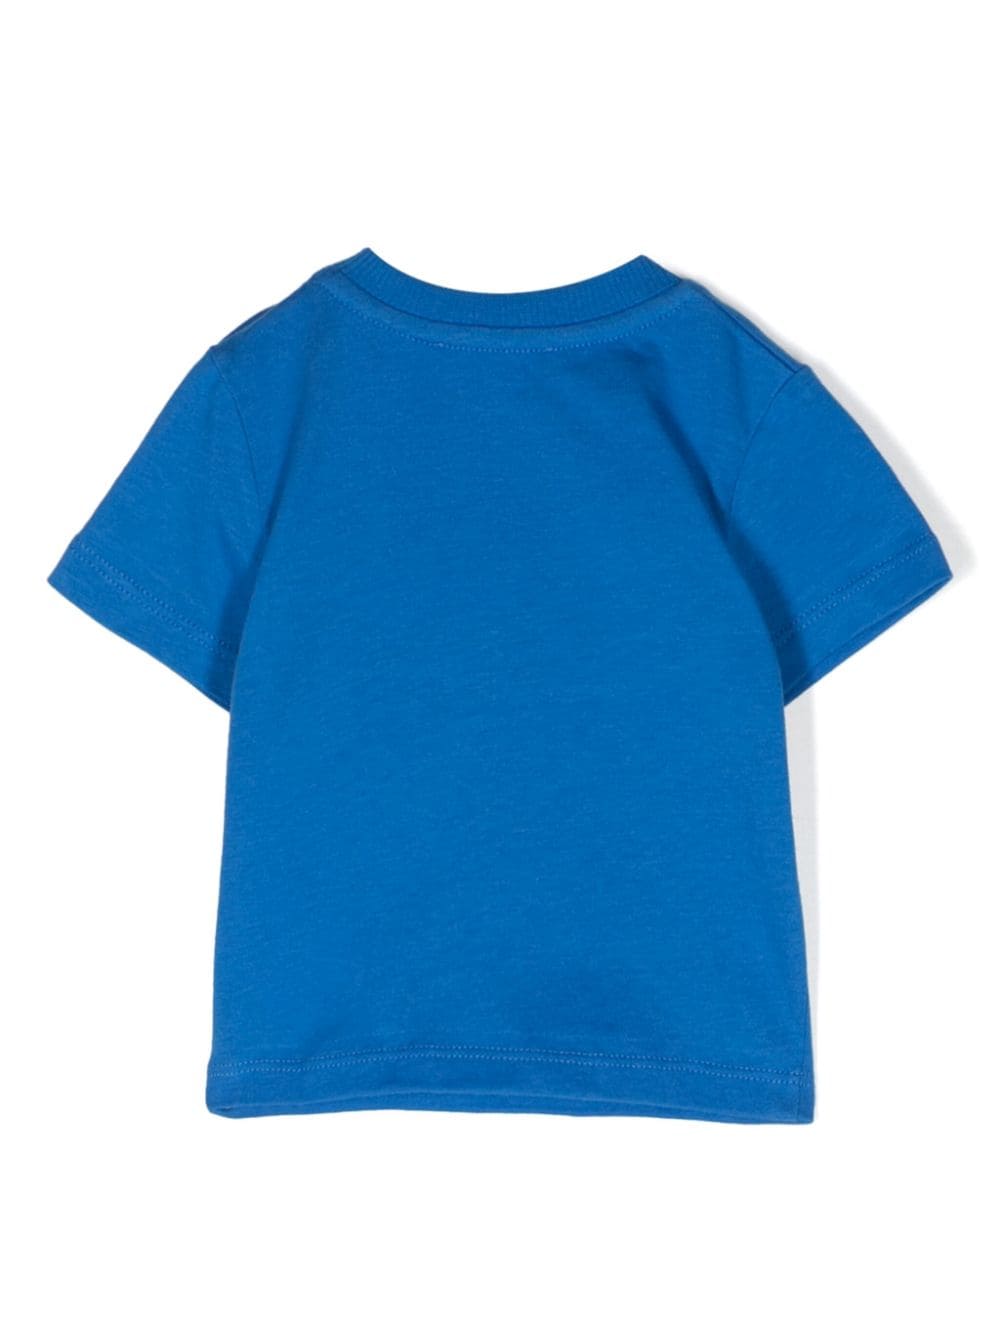 T-shirt blu/multicolore neonata